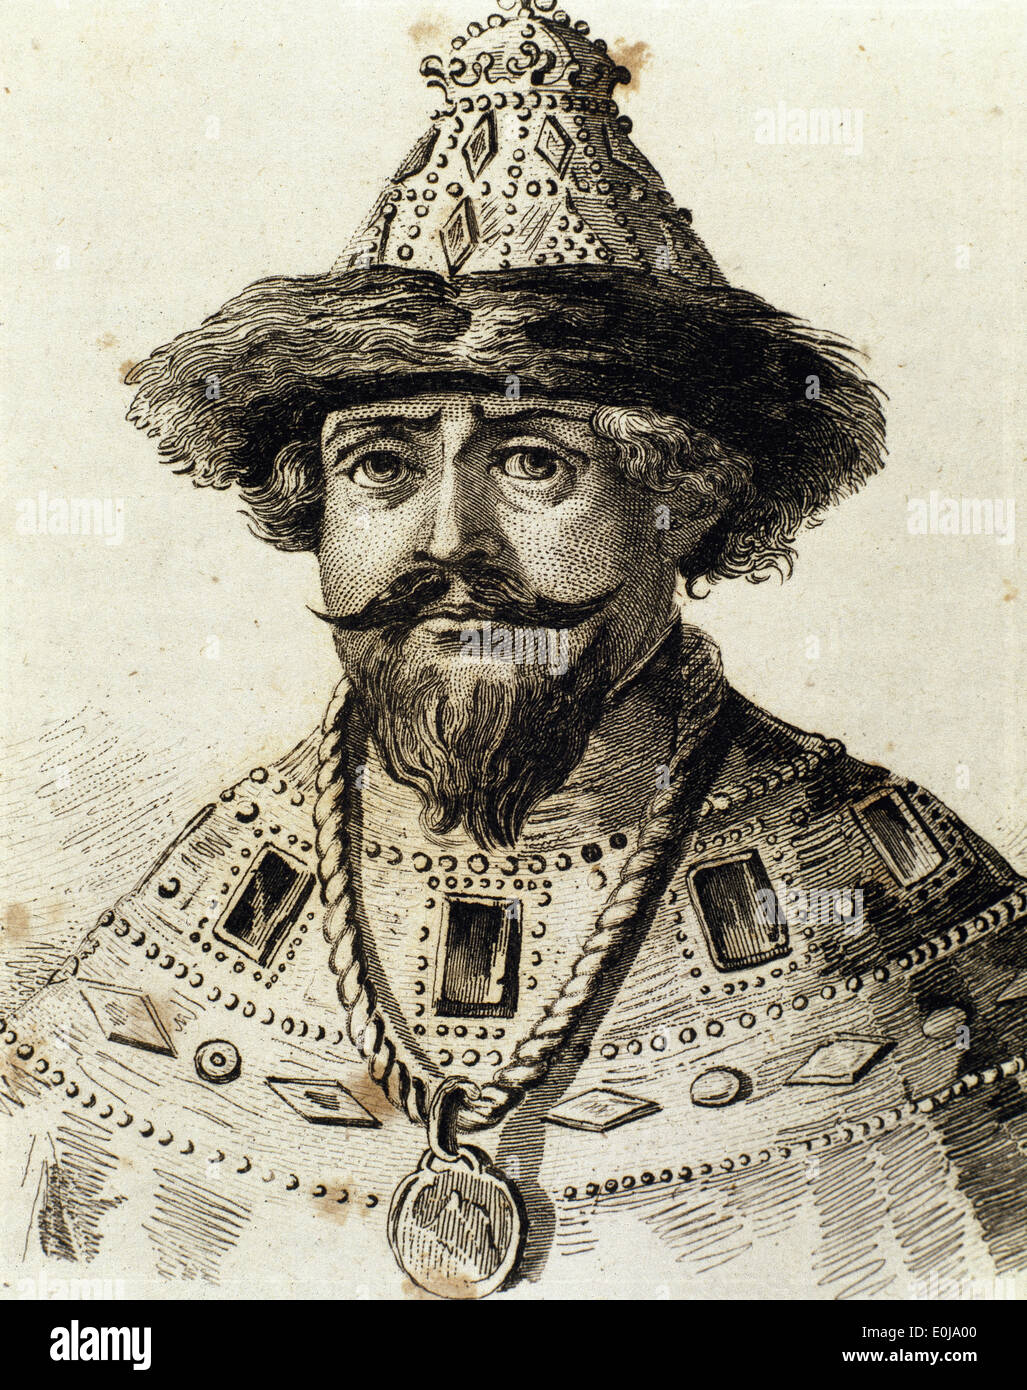 Michael I della Russia (1596-1645). Prima dello zar russo della casa di Romanov. Incisione del XIX secolo. Foto Stock